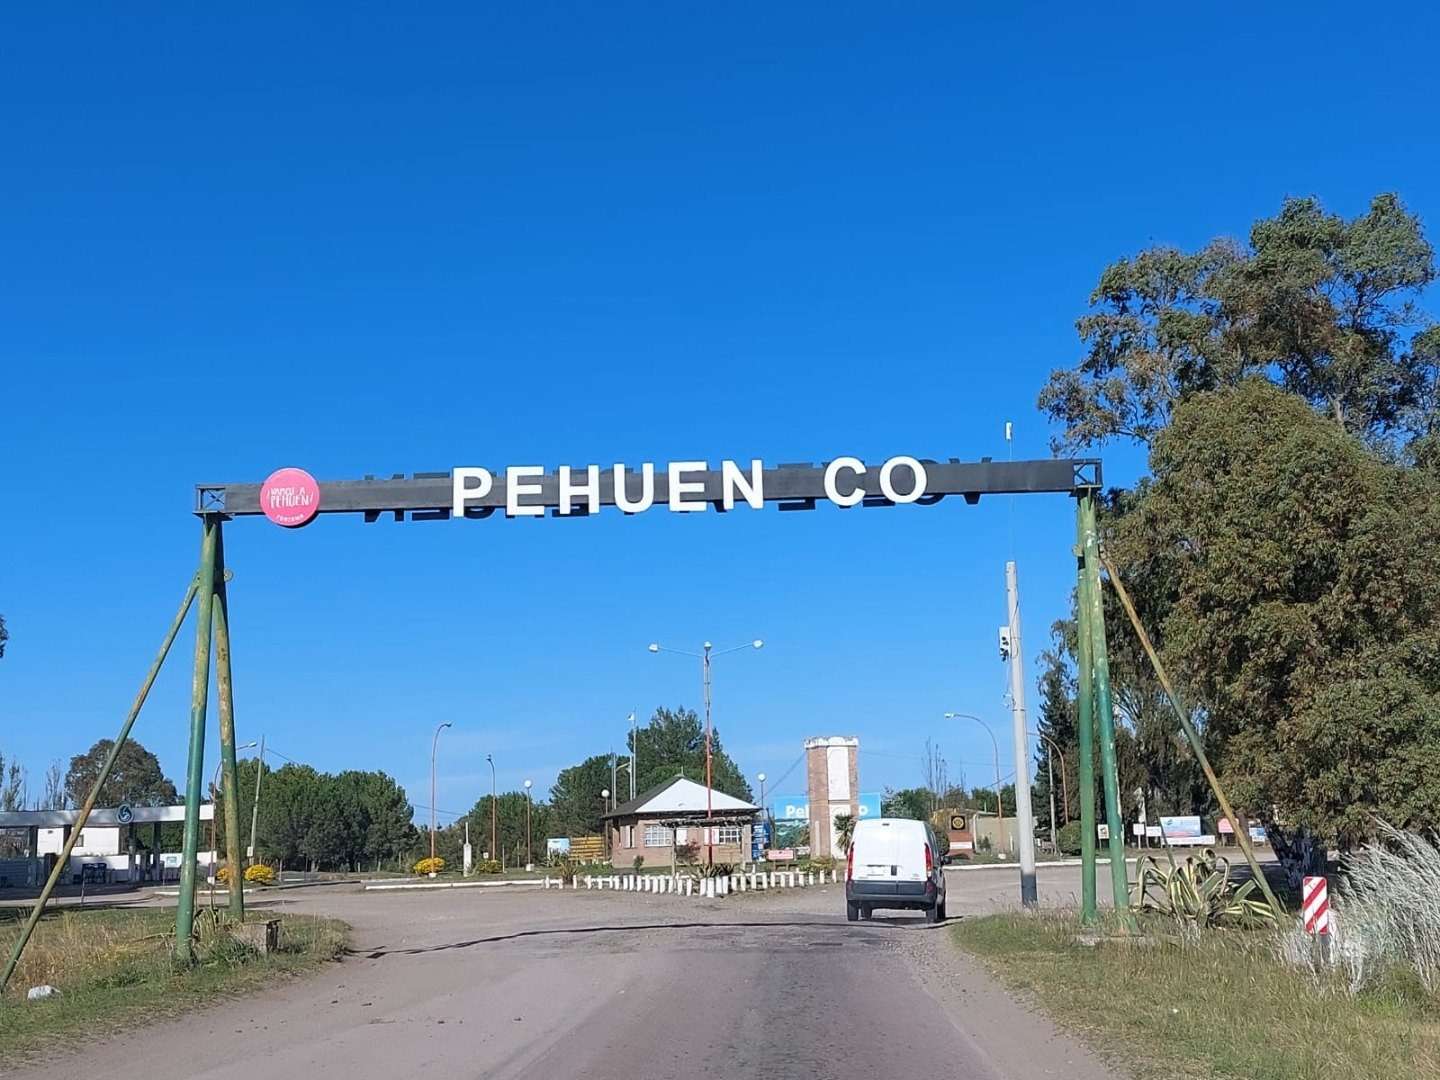 Coronel Rosales: Vecinos de la localidad de Pehuén Co preocupados por “ola de robos” piden reunión con el intendente